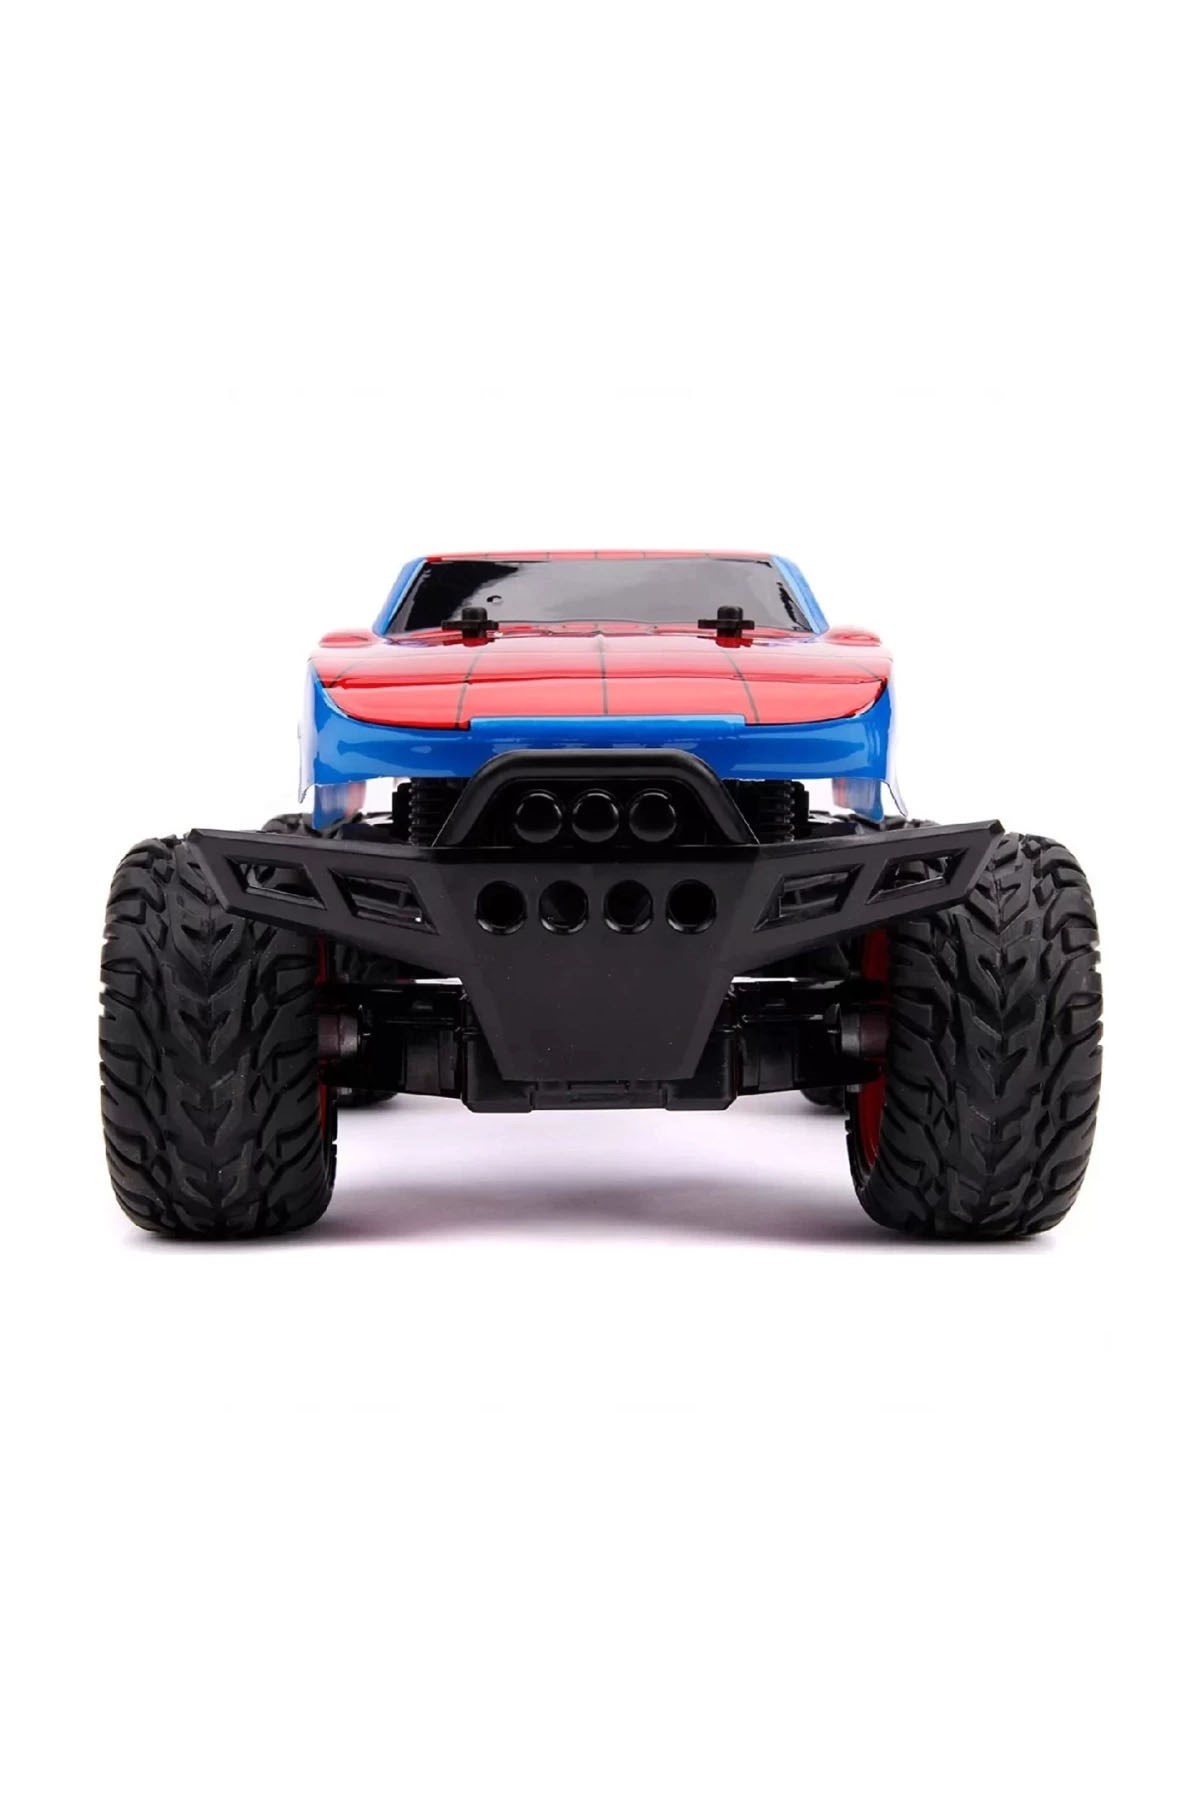 Jada Toys Marvel RC Spiderman Daytona Turbo Araba 1:12 Scale